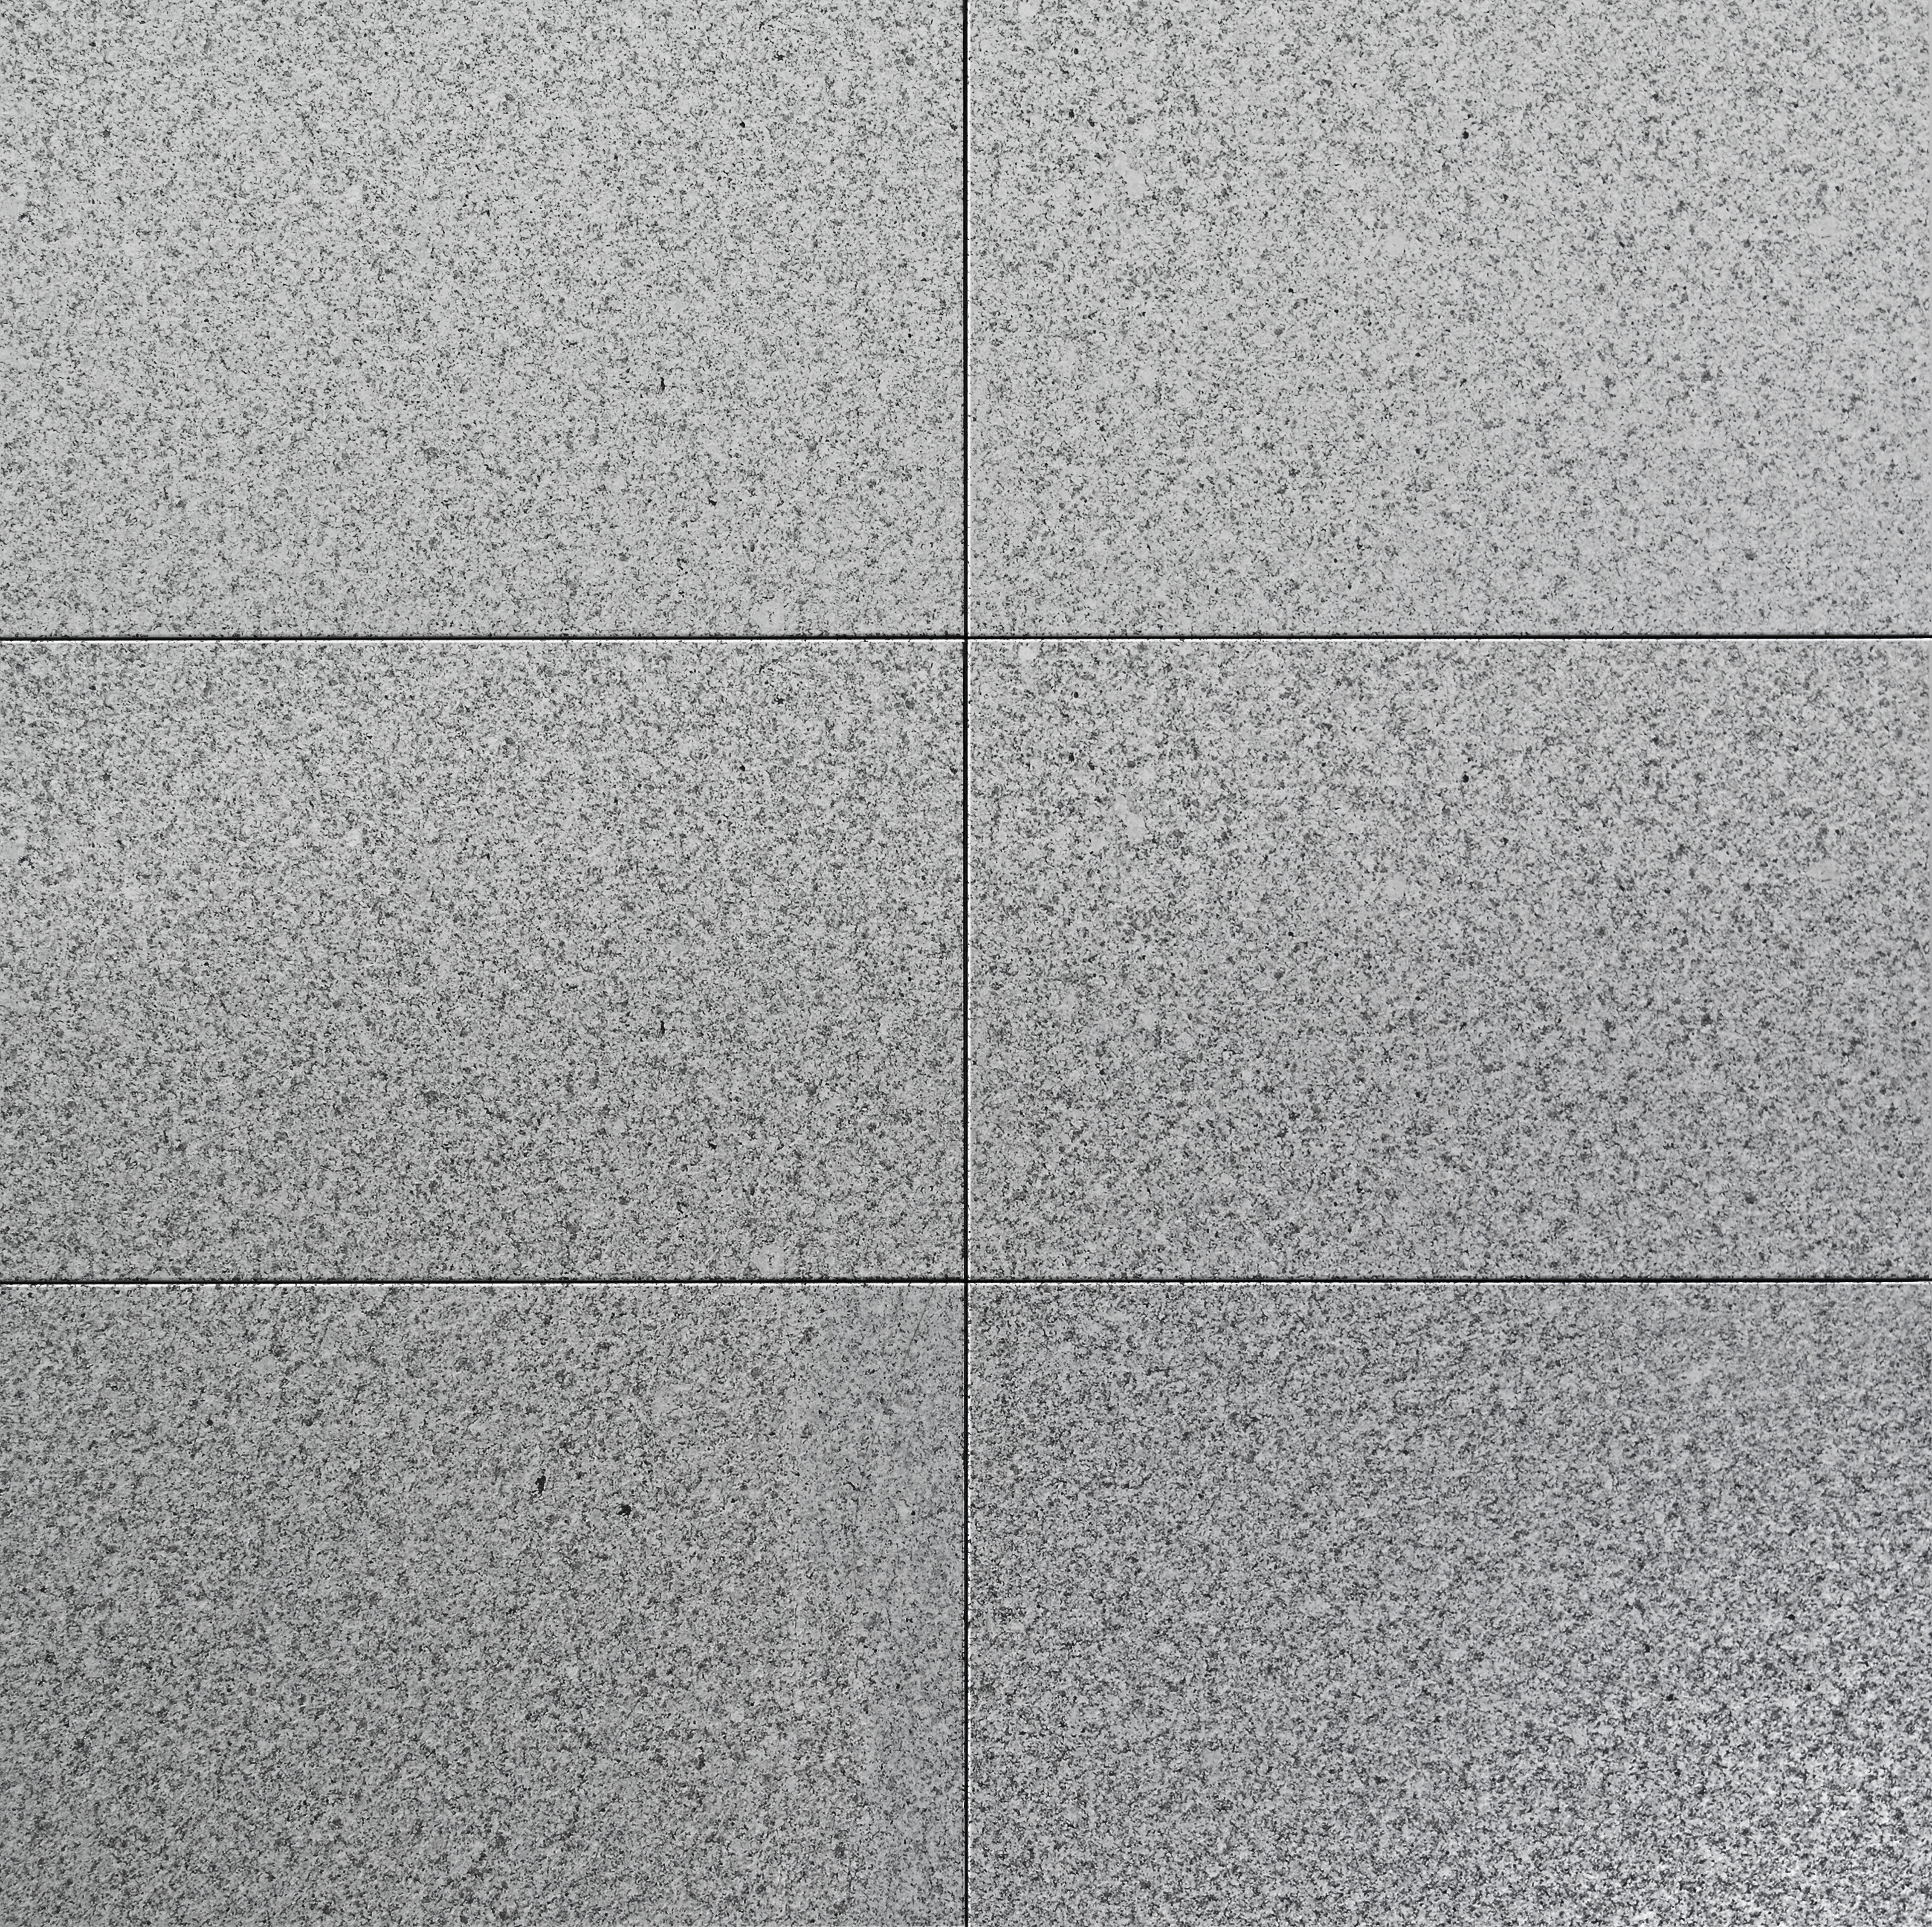 ZL OST Granit grey 40x60x3cm Piazzo Eleg Lin. 